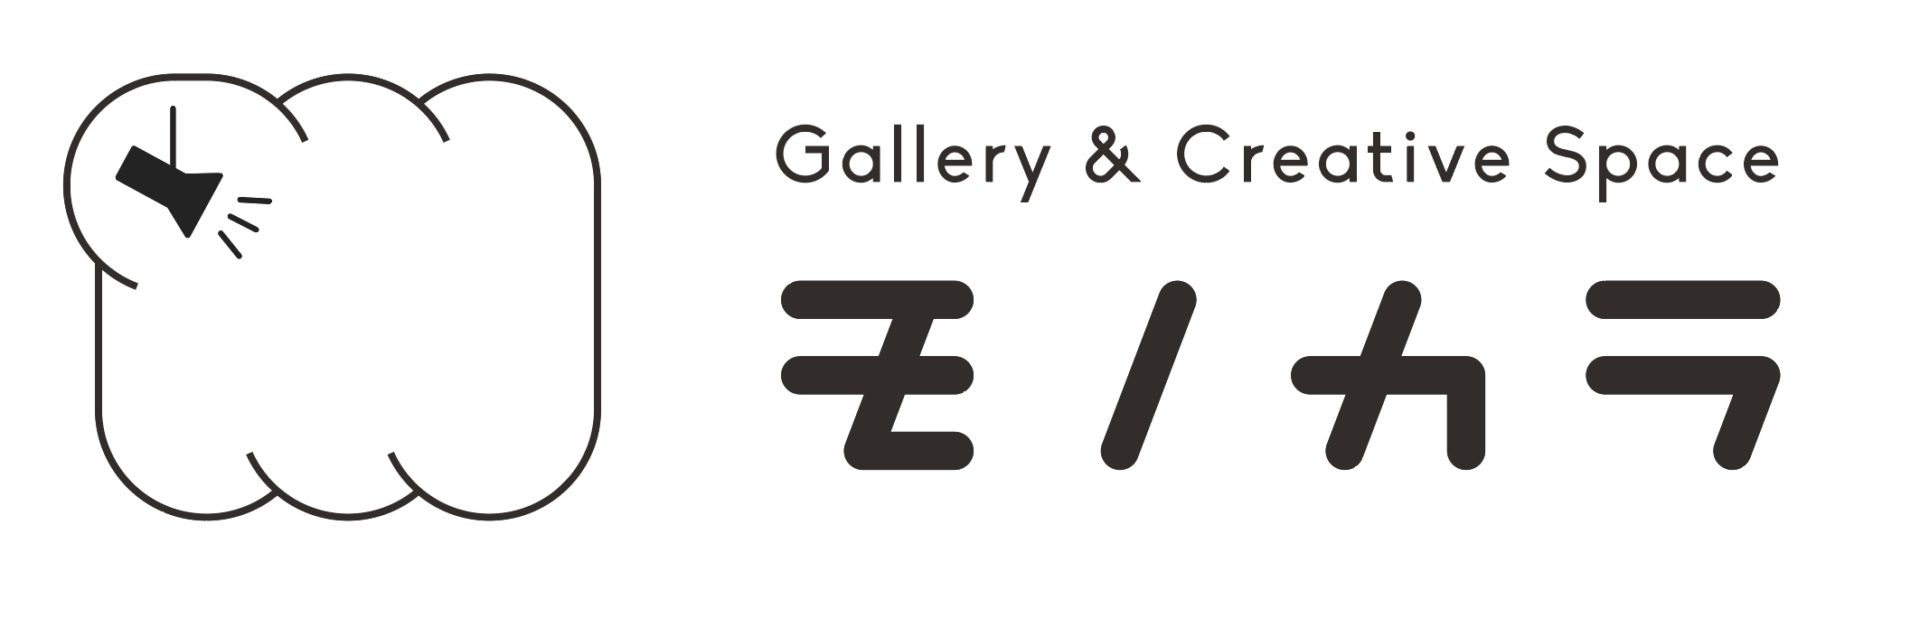 Gallery&CreativeSpace MONOCARA